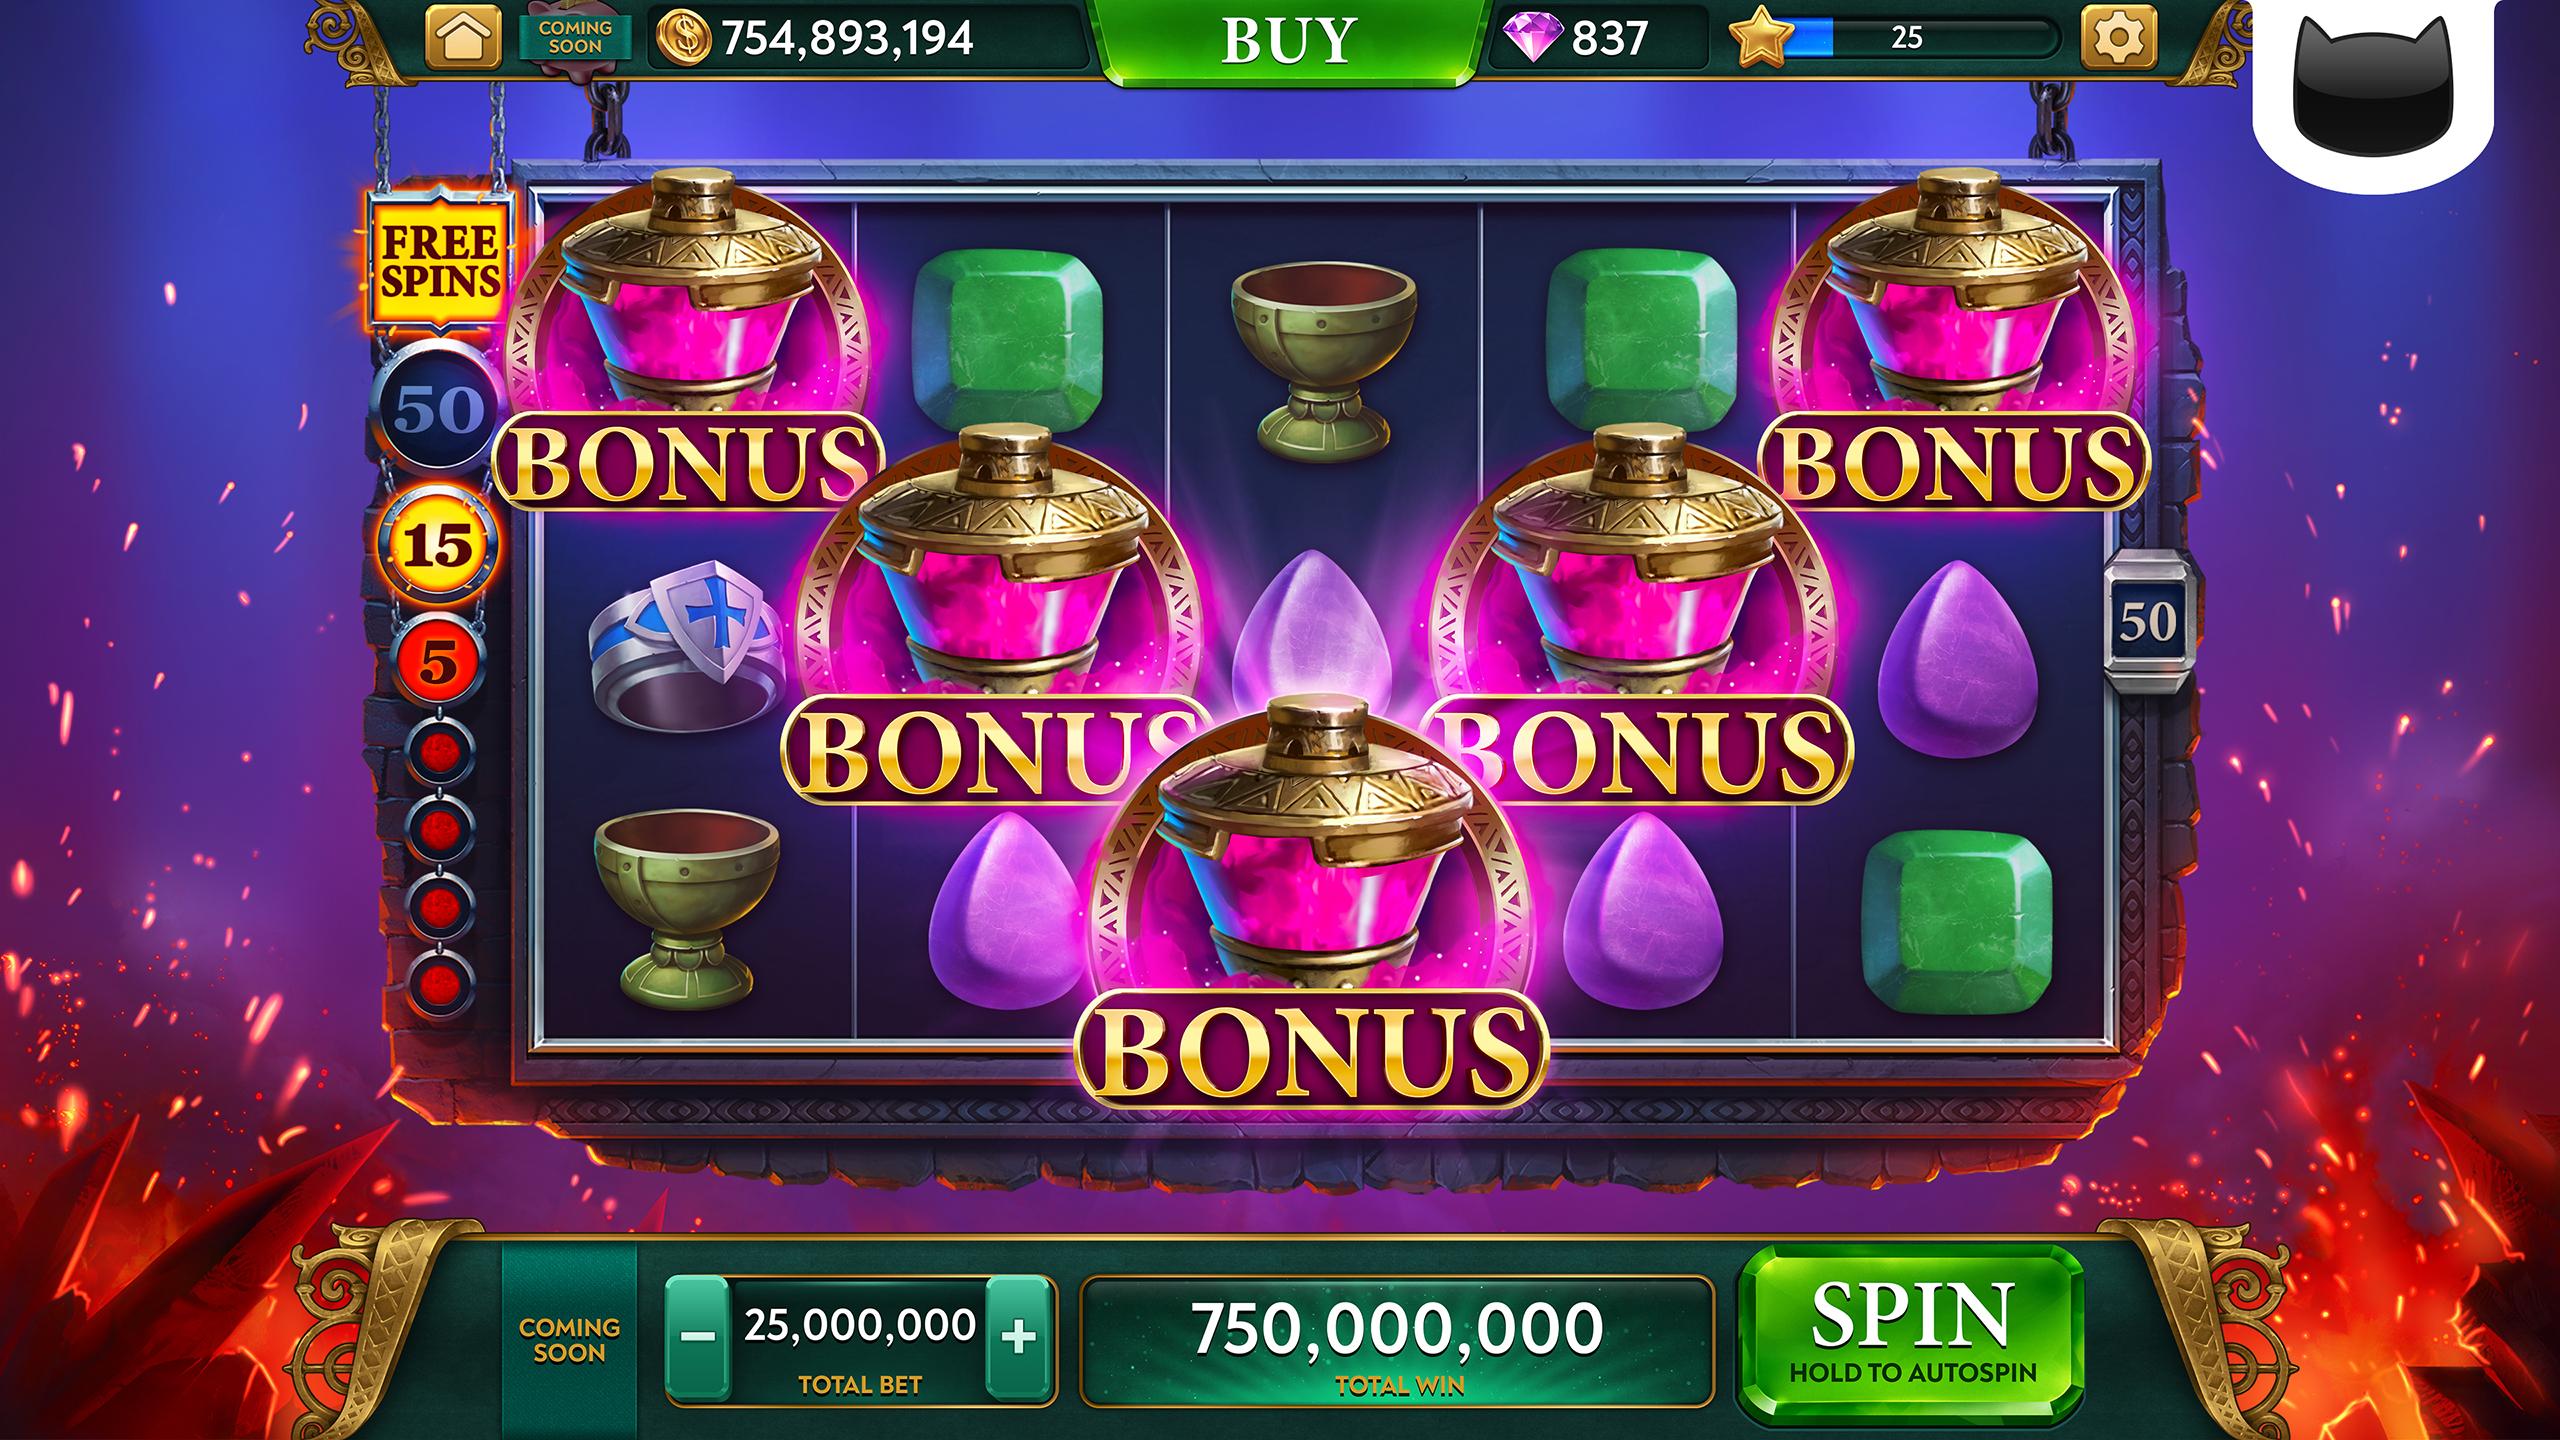 ARK Slots - Wild Vegas Casino & Fun Slot Machines 1.7.1 Screenshot 22